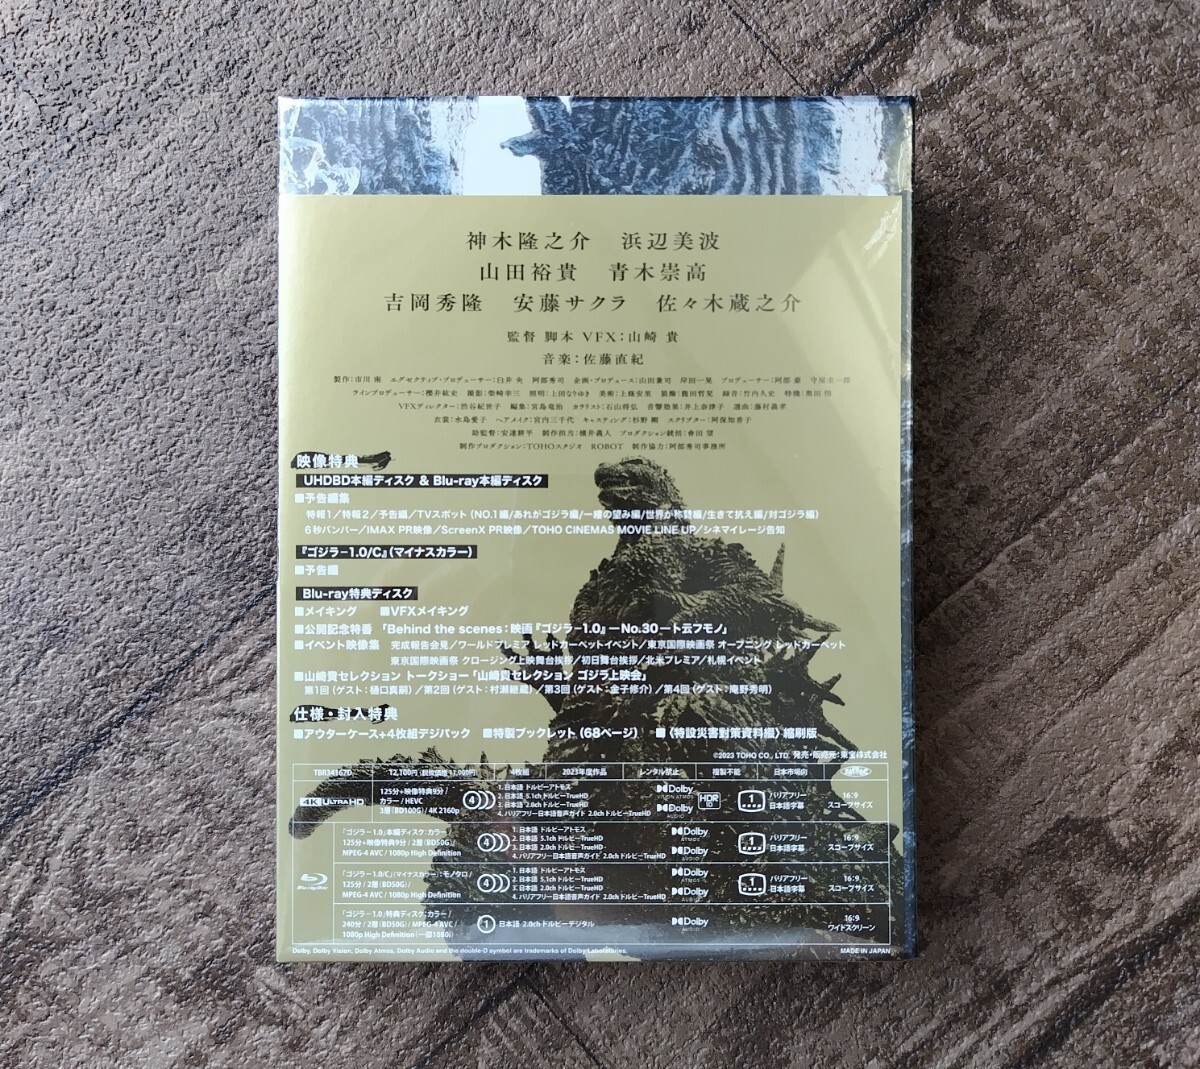 ゴジラ-1.0 豪華版 4K Ultra HD Blu-ray 同梱4枚組 【先着予約購入特典付】 ゴジラマイナスワン_画像3